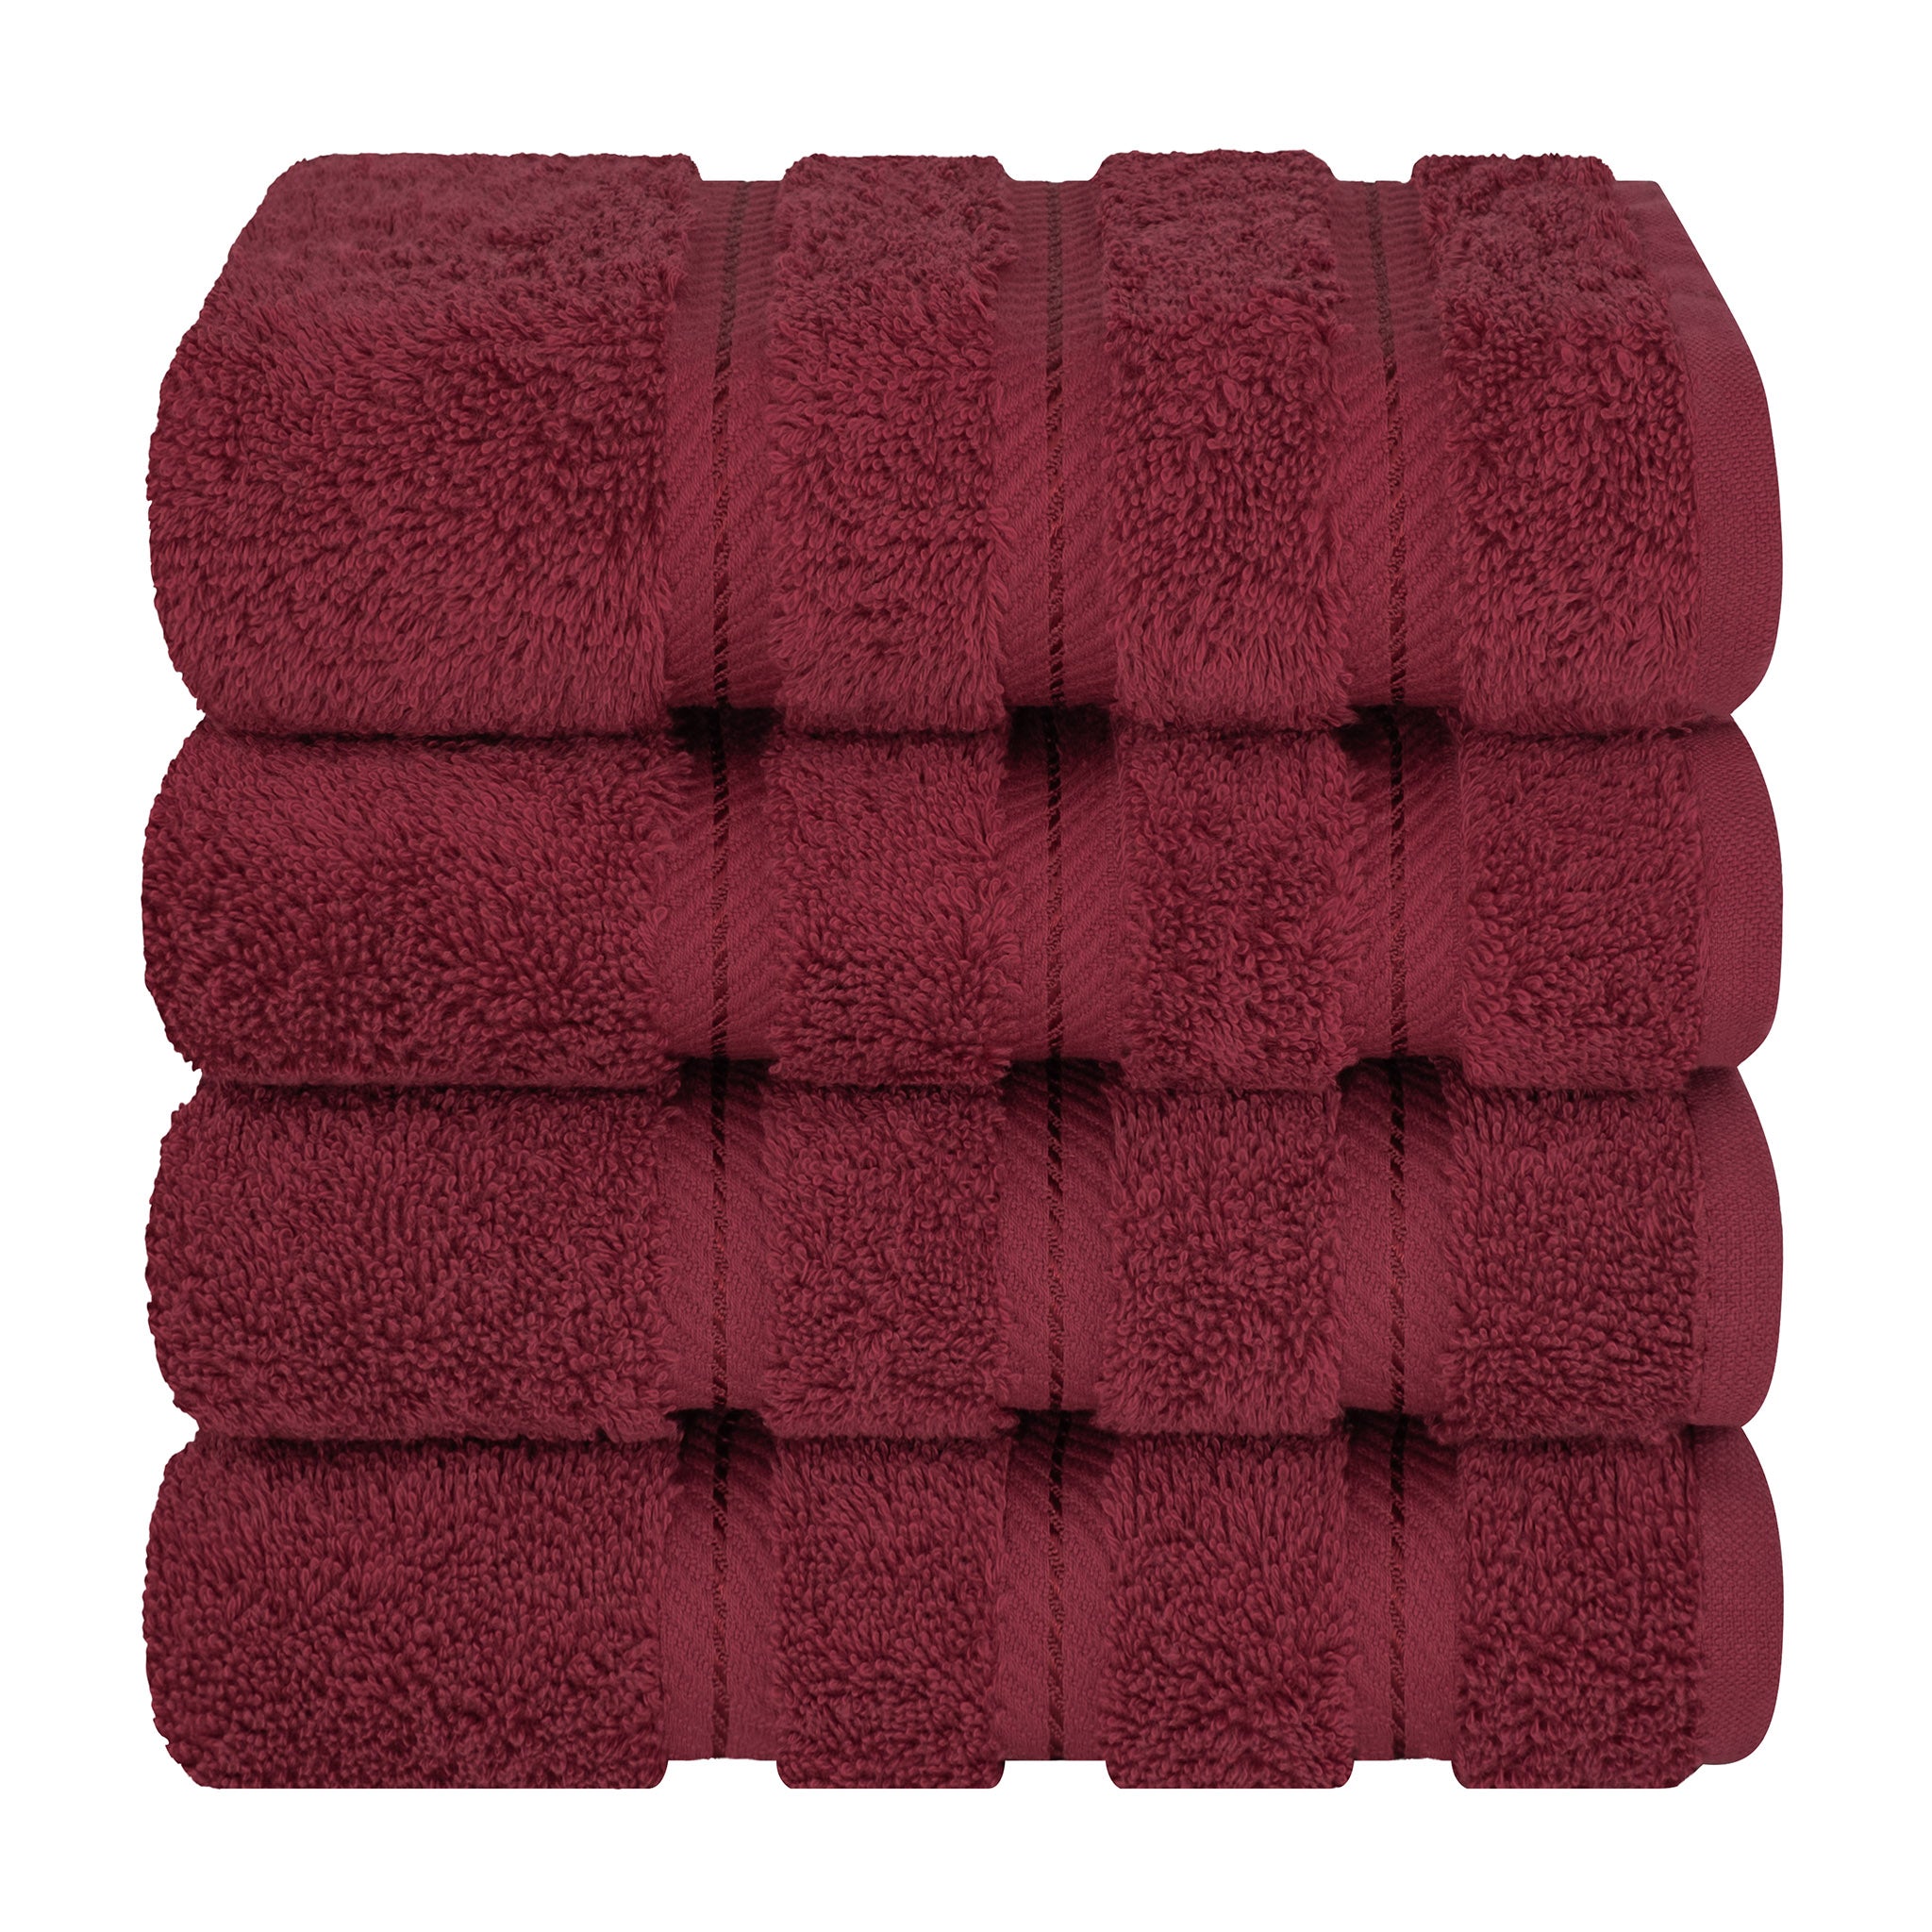 American Soft Linen 100% Turkish Cotton 4 Pack Hand Towel Set Wholesale bordeaux-red-7